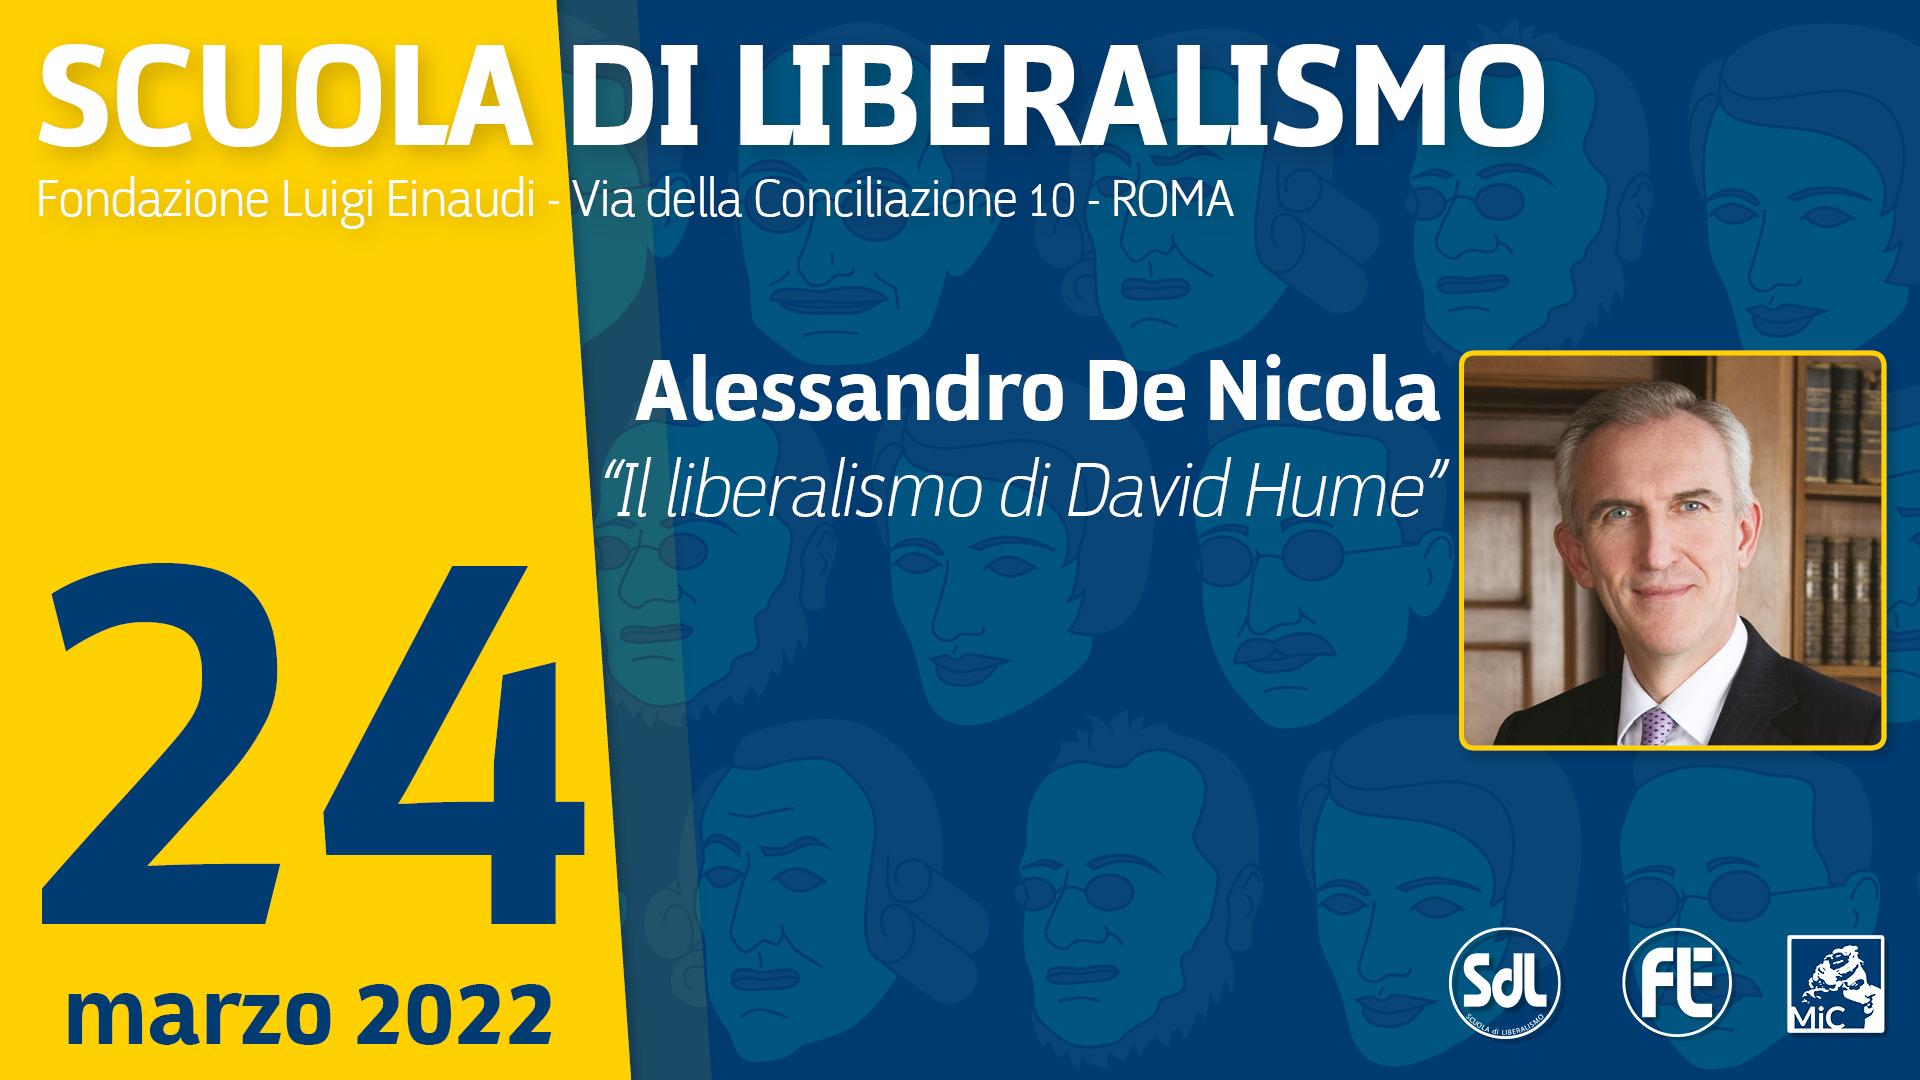 Scuola di Liberalismo 2022 – Alessandro De Nicola “Il liberalismo di David Hume”